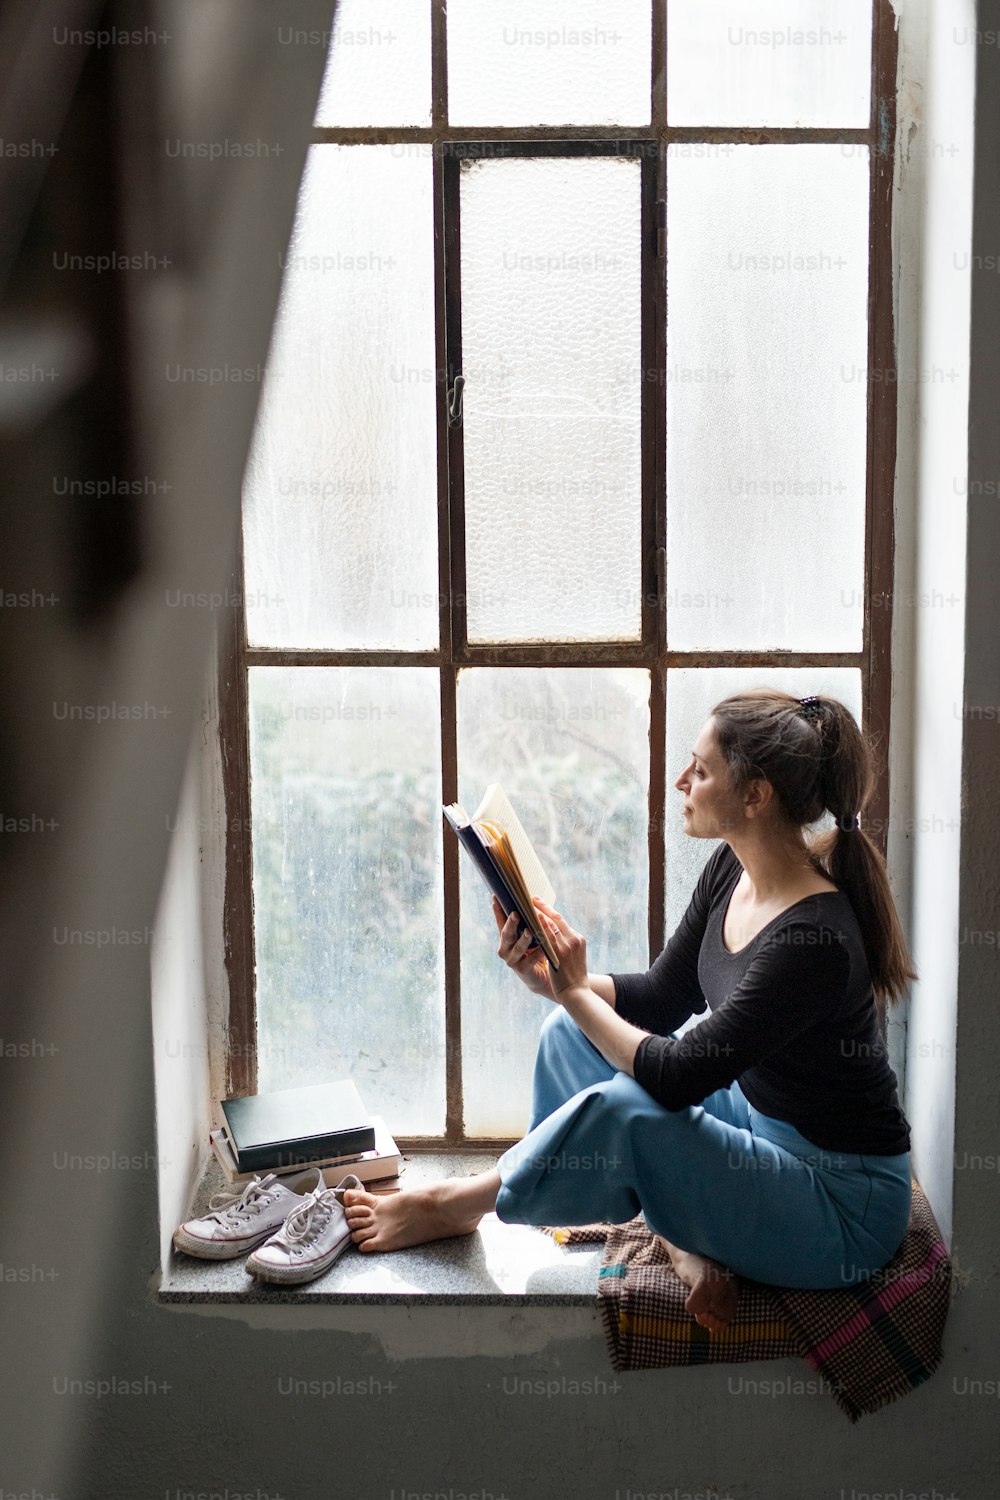 Ritratto di donna felice seduta sul davanzale della finestra vecchio e sporco, che legge un libro.